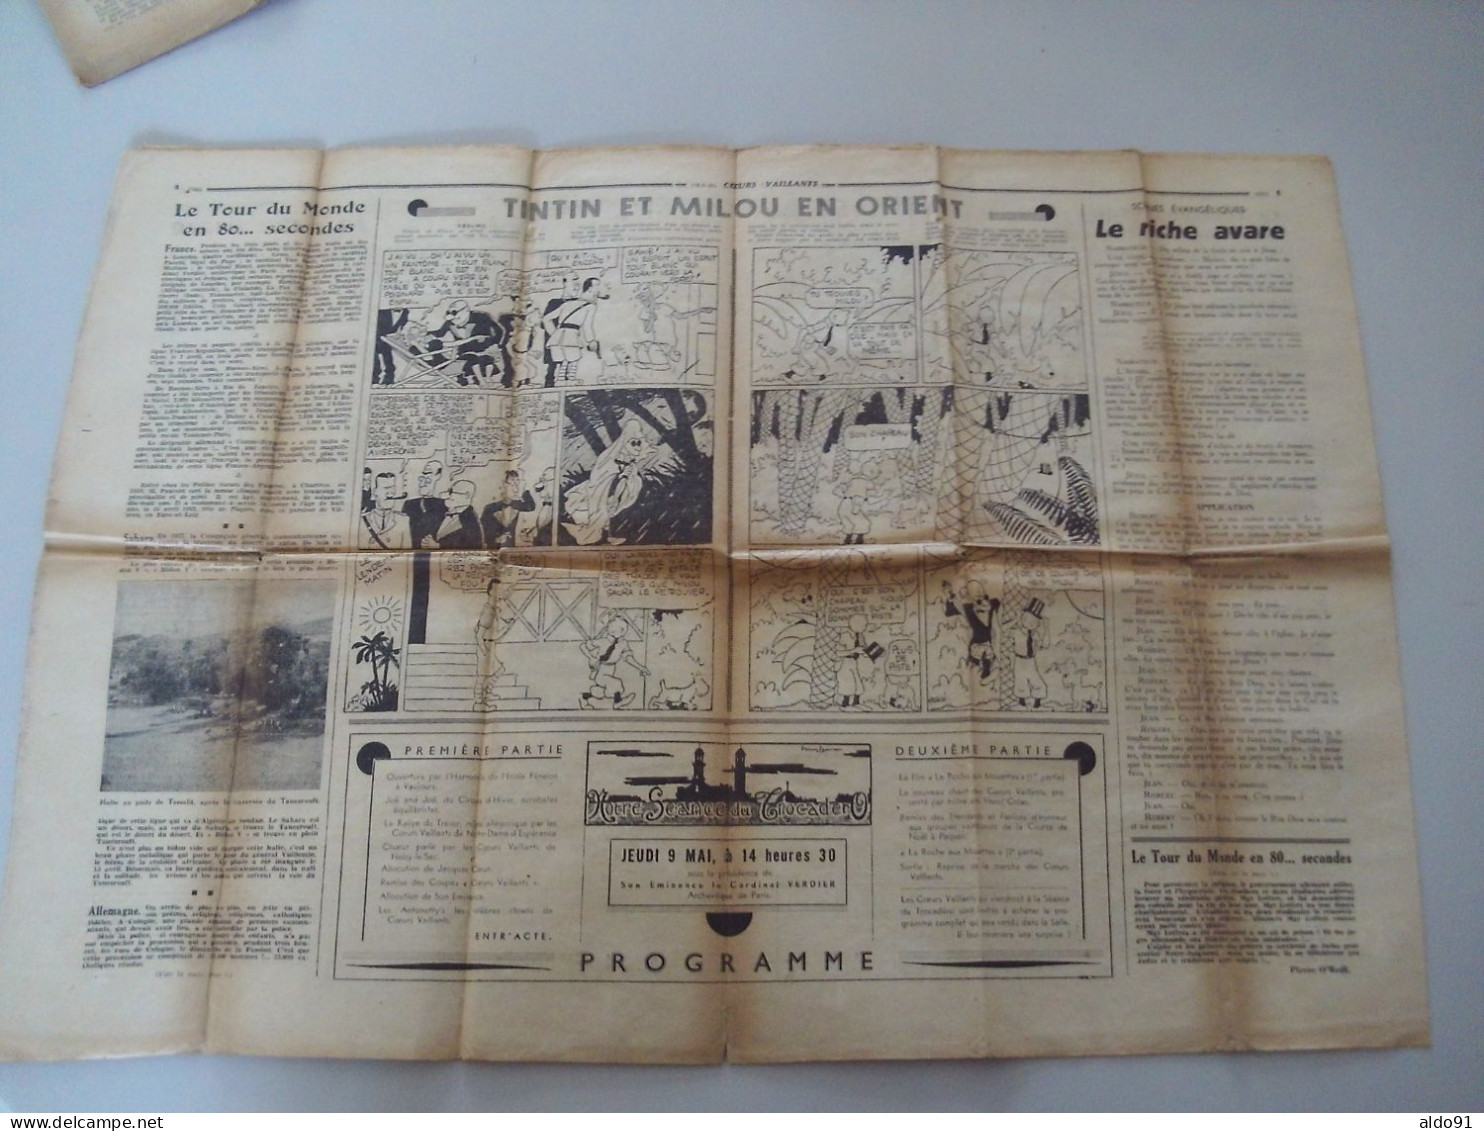 (Pat'Fol, Tintin - Hergé, Marijac) - Lot de 7 Magazines  " COEUR VAILLANT "  N° 13,18,19,21, 23 à 25 (7ème année - 1935)